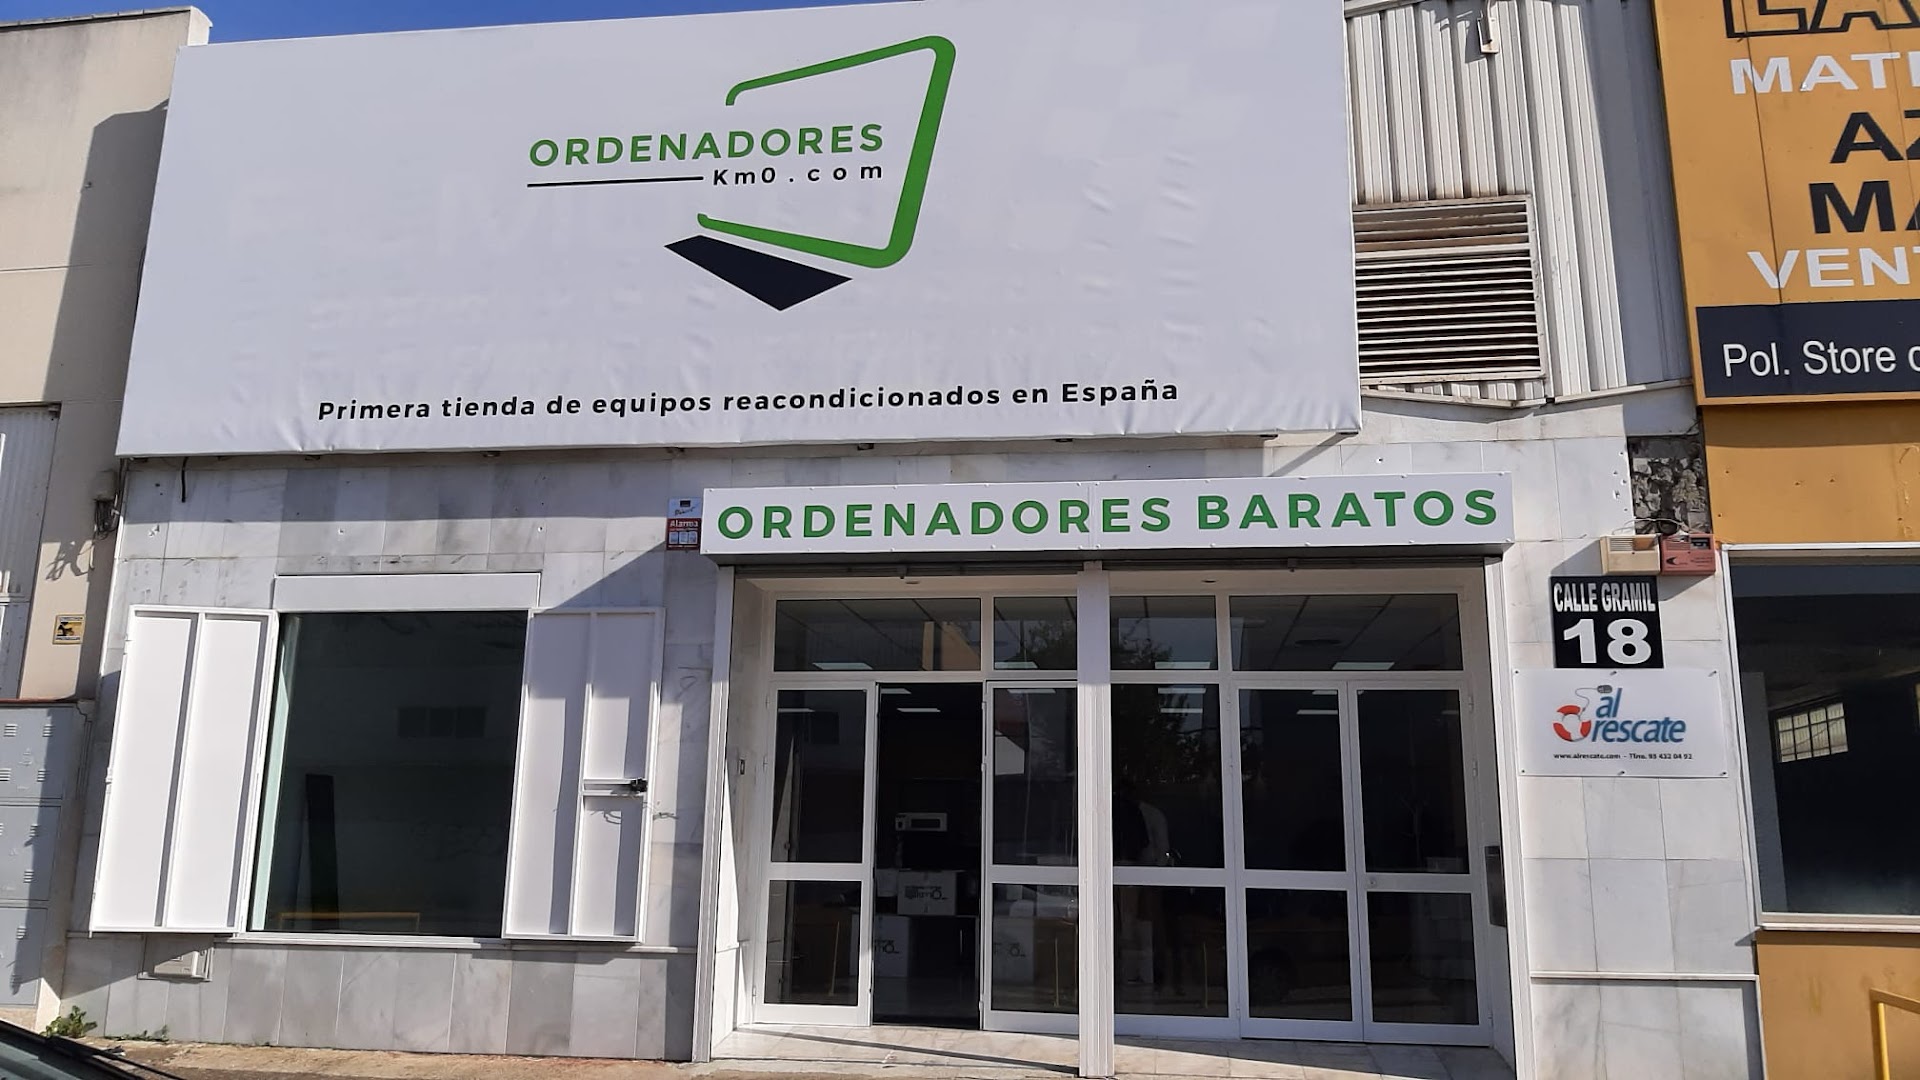 Ordenadores KM 0, tienda de ordenadores reacondicionados en Sevilla